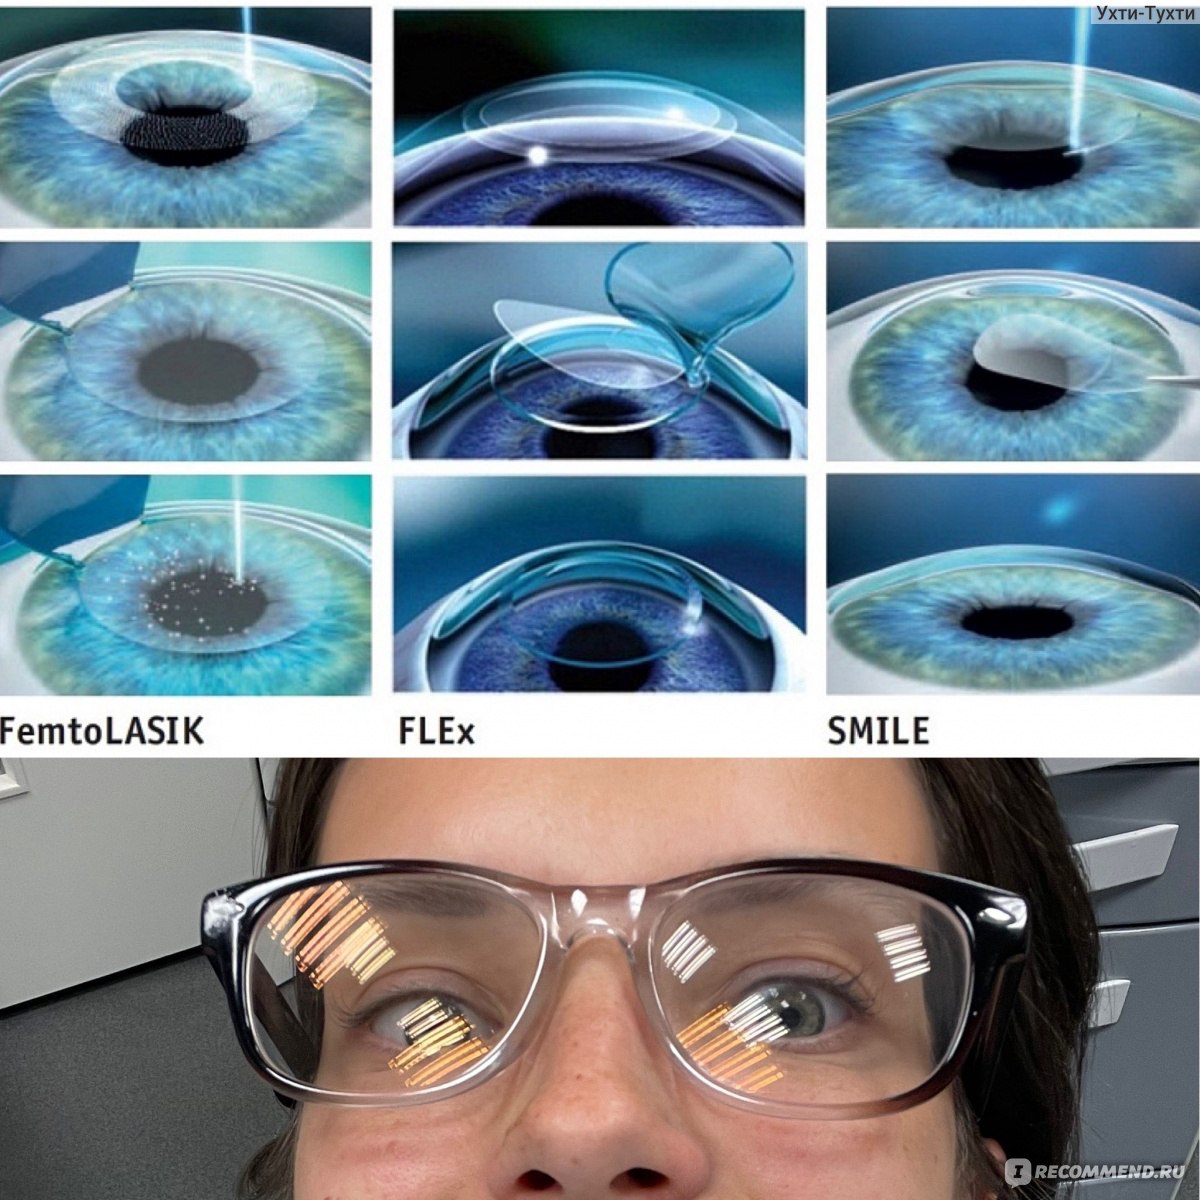 Лазерная коррекция зрения спустя много лет отзывы. Лазерная коррекция зрения ФРК. ФРК ласик Смайл. Лазерная коррекция RELEX smile. Коррекция зрения методом ласик.